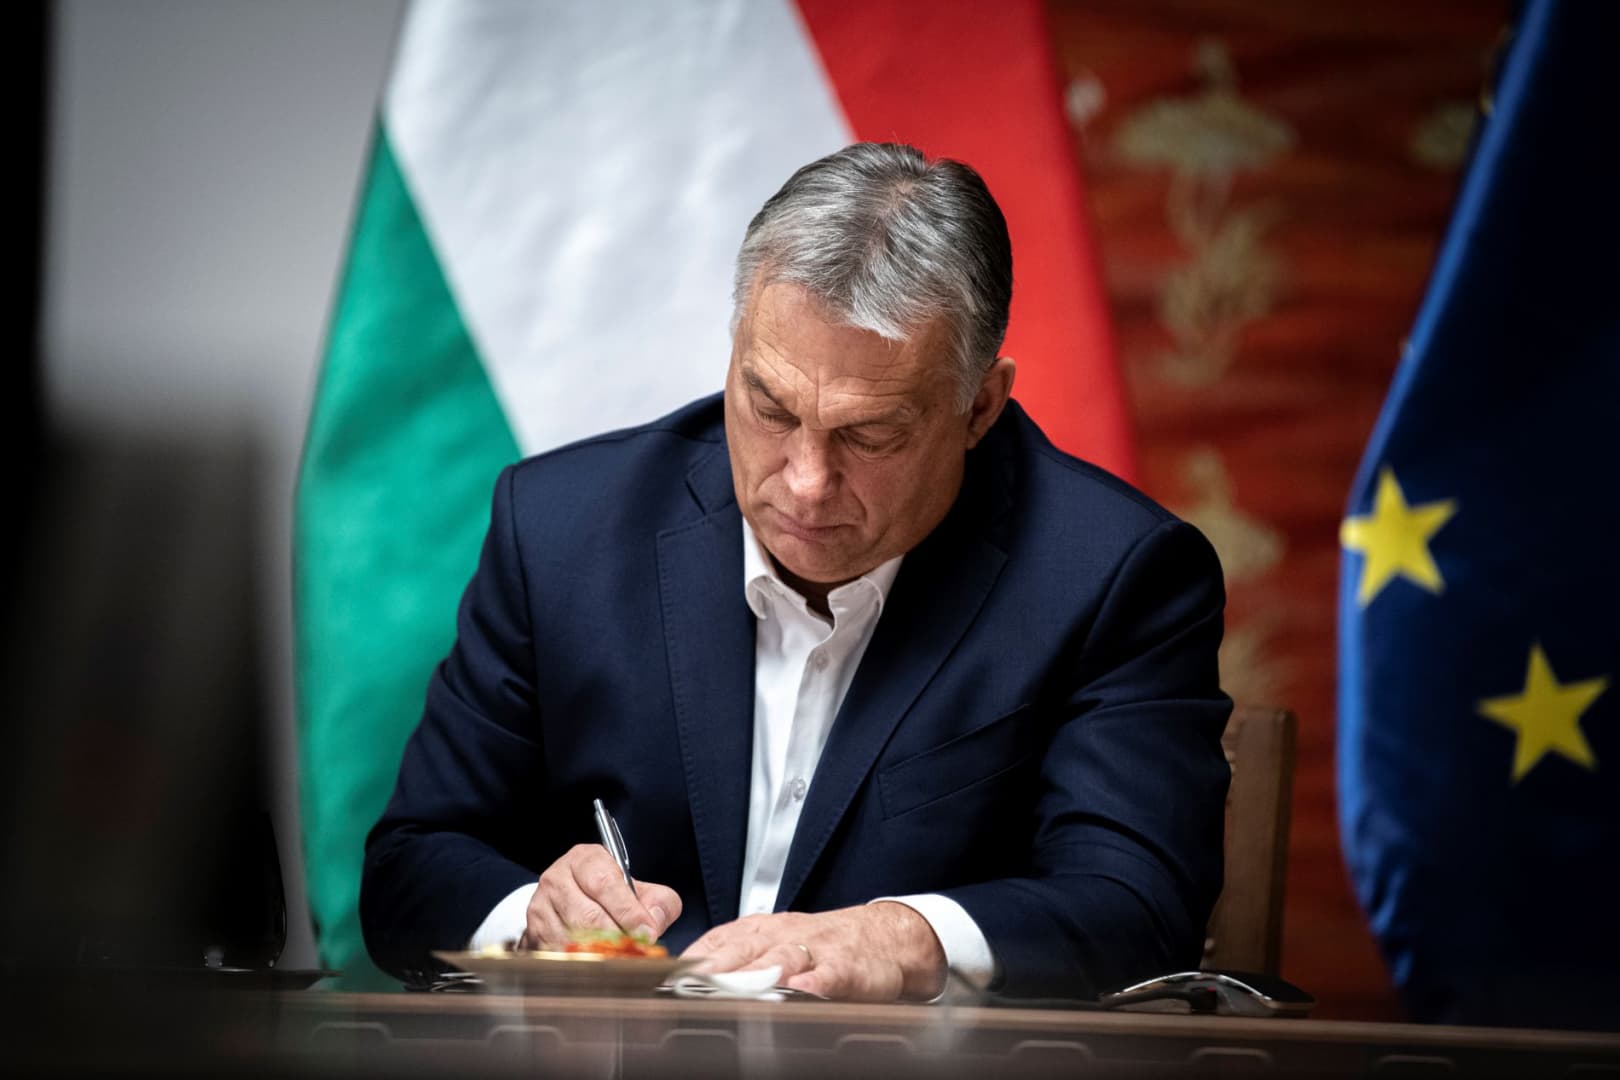 Nálunk egyelőre nem vesz földet Orbán, de hogyan megy ez Erdélyben és Vajdaságban?